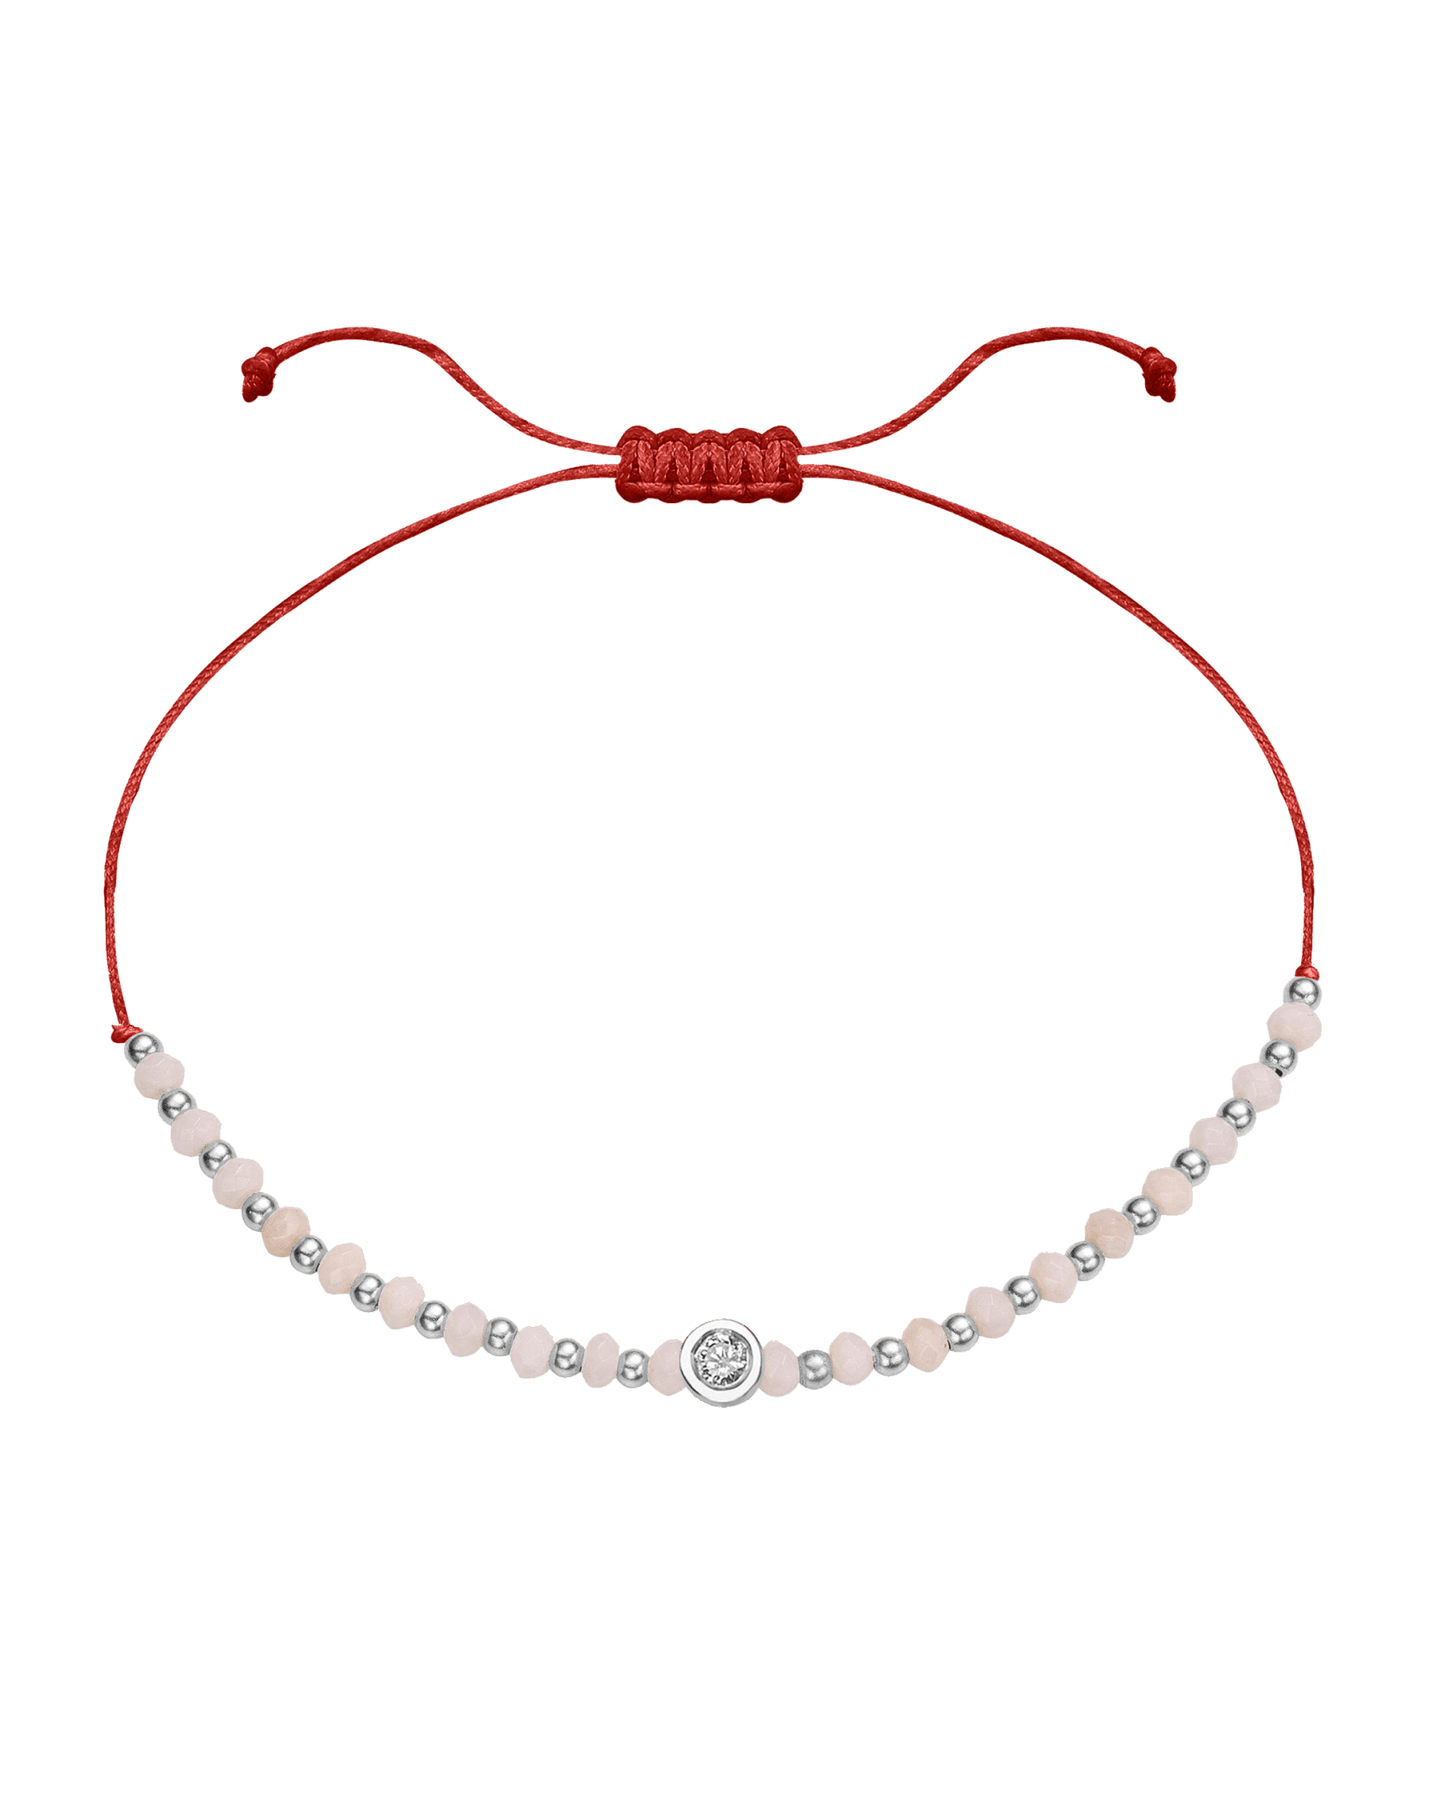 Rhodochrosite Gemstone String of Love Bracelet for Compassion - 14K White Gold Bracelet 14K Solid Gold Red Medium: 0.04ct 